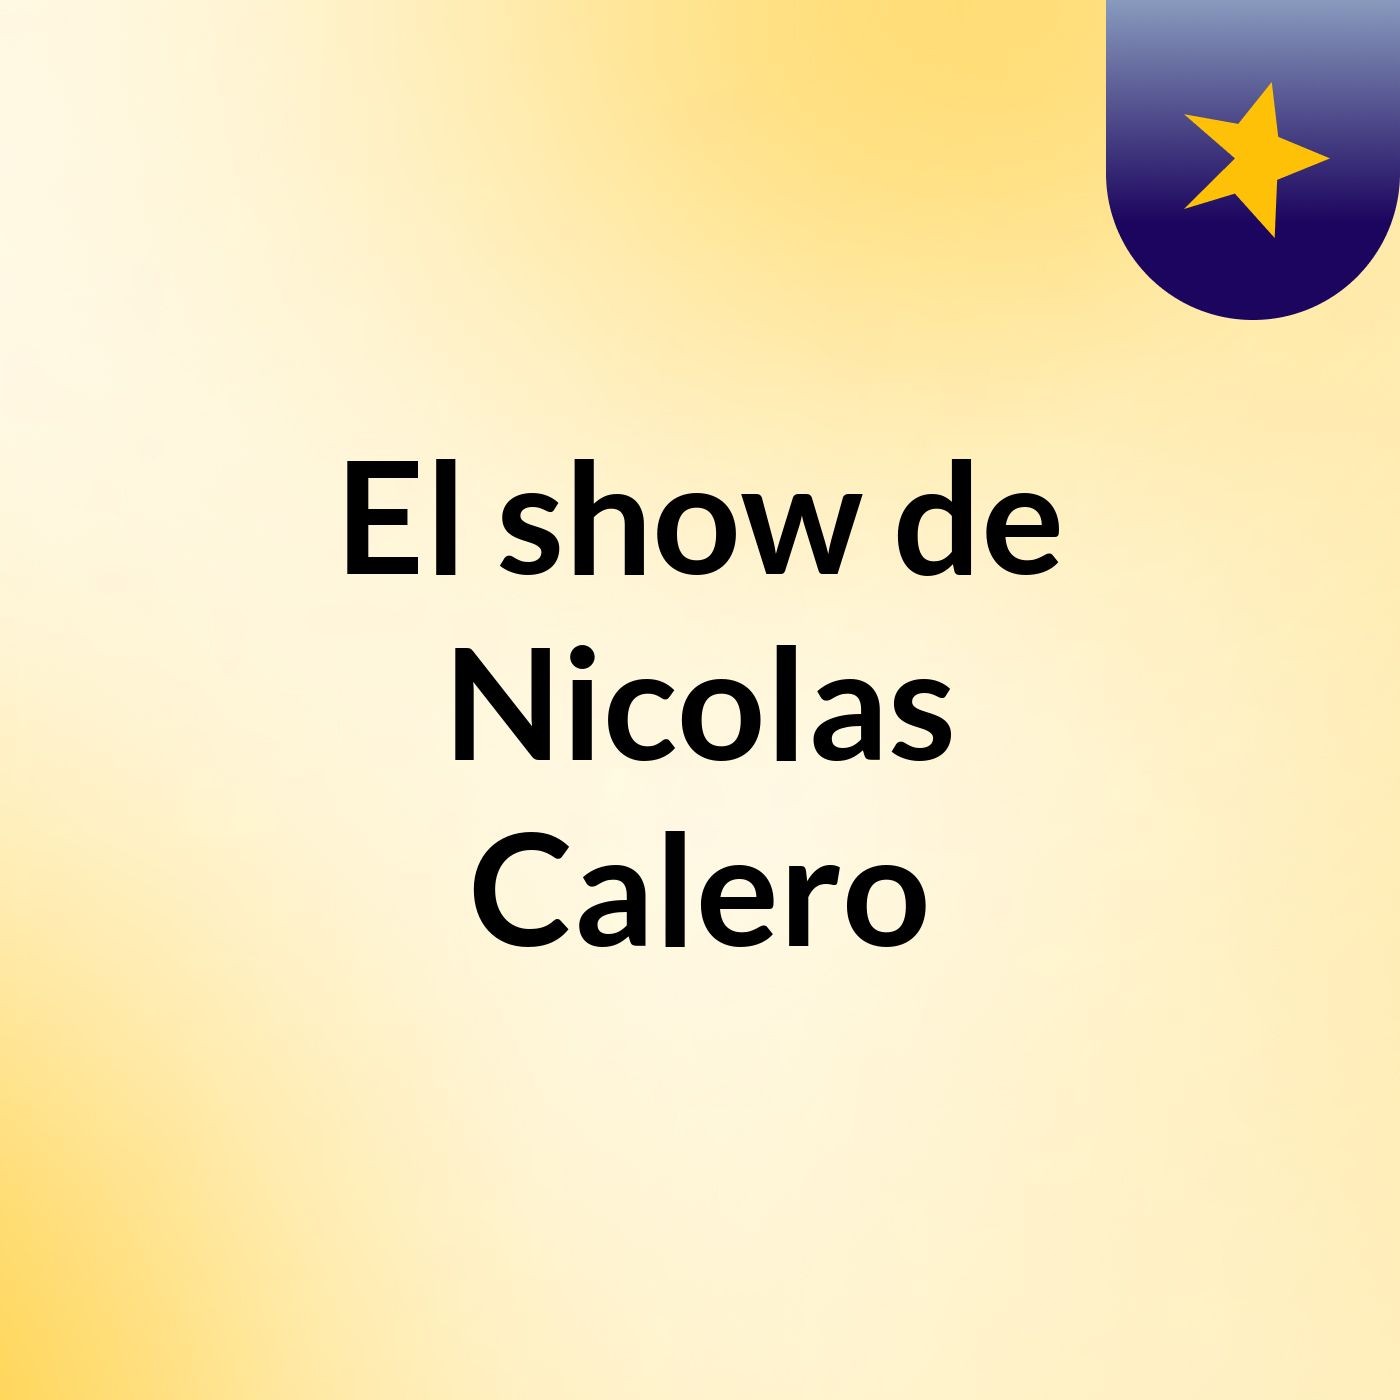 El show de Nicolas Calero